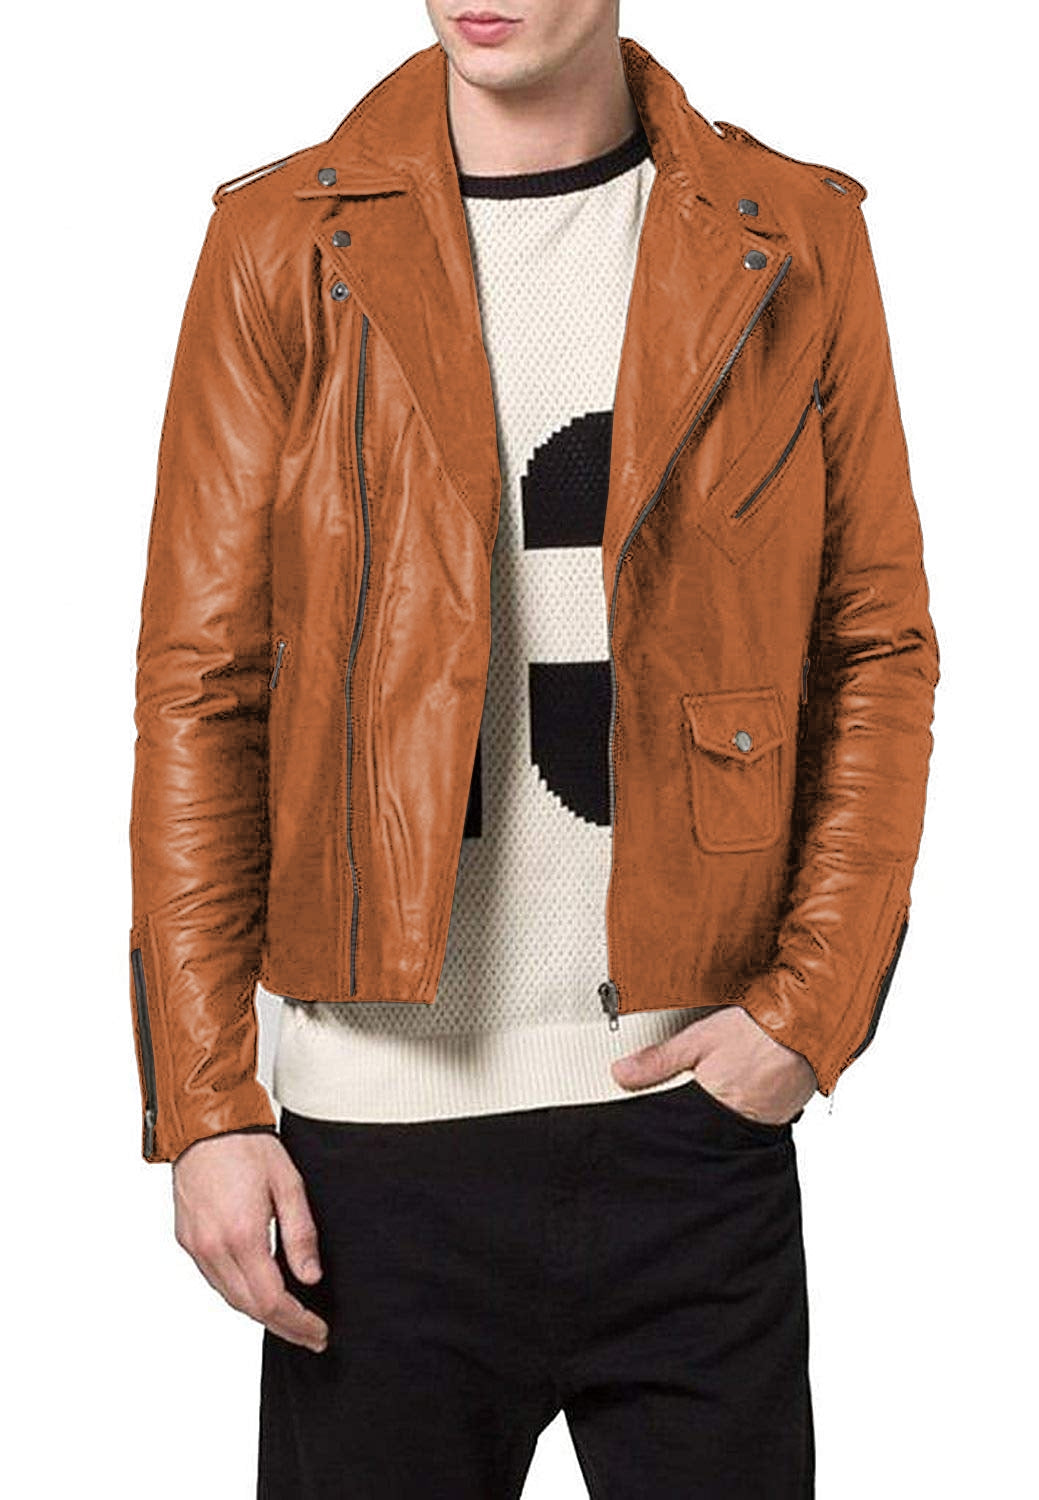 Leather Jackets Hub Mens Genuine Lambskin Leather Jacket (Black, Double Rider Jacket) - 1501188